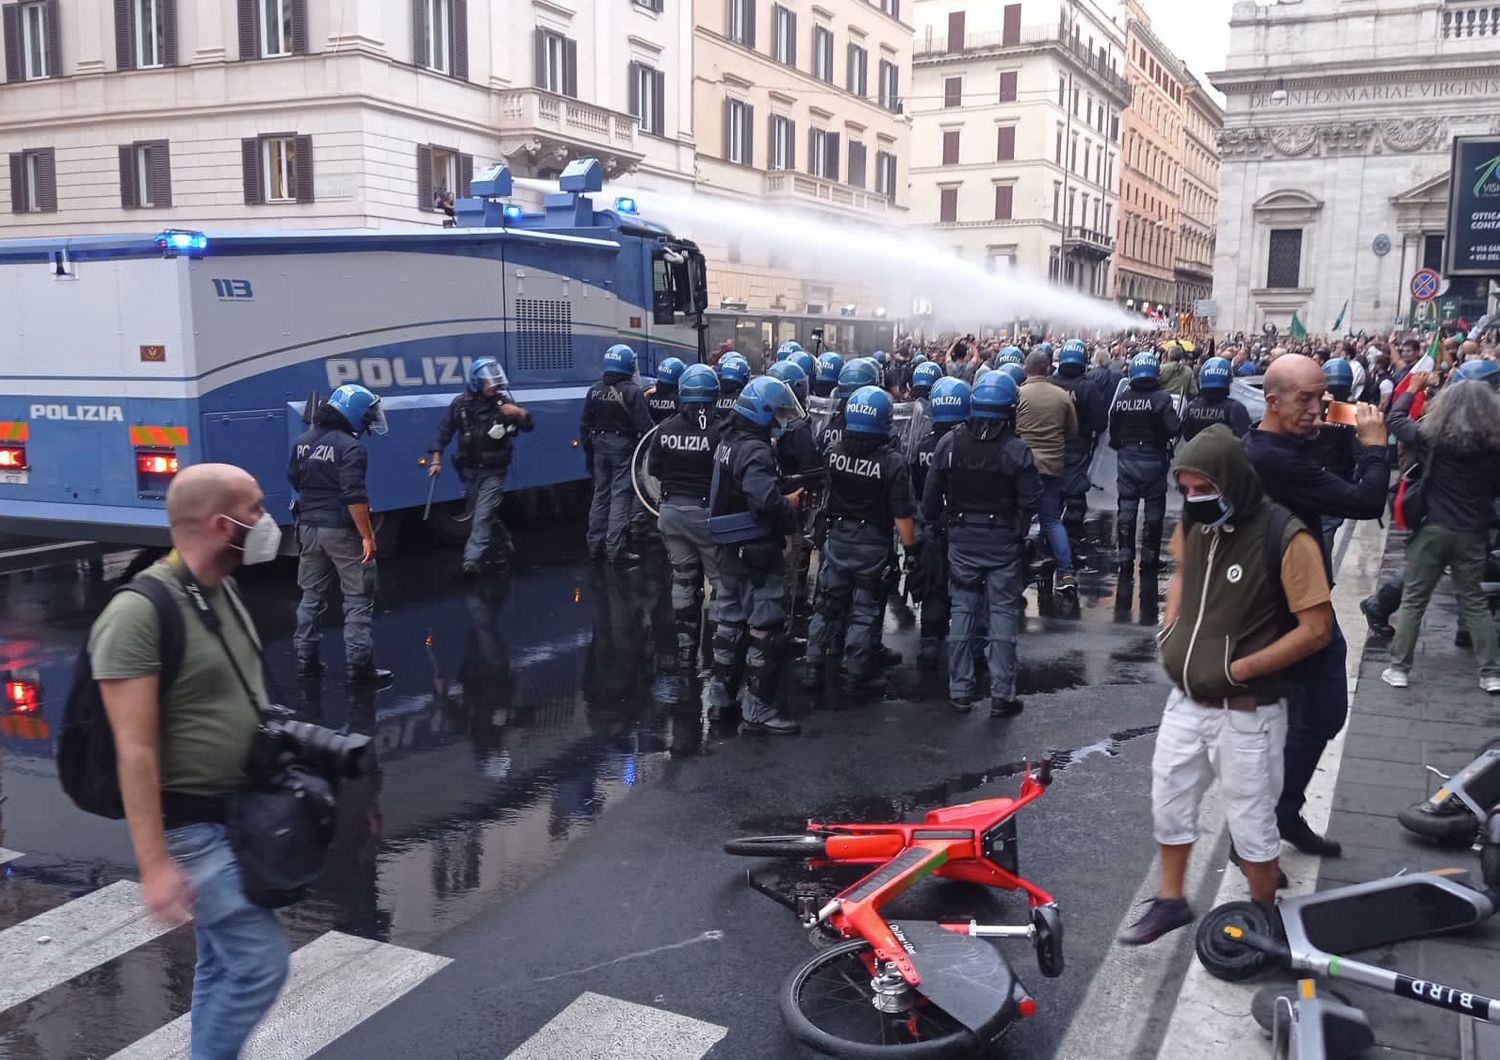 La polizia usa idranti per disperdere la manifestazione, accanto a palazzo Chigi